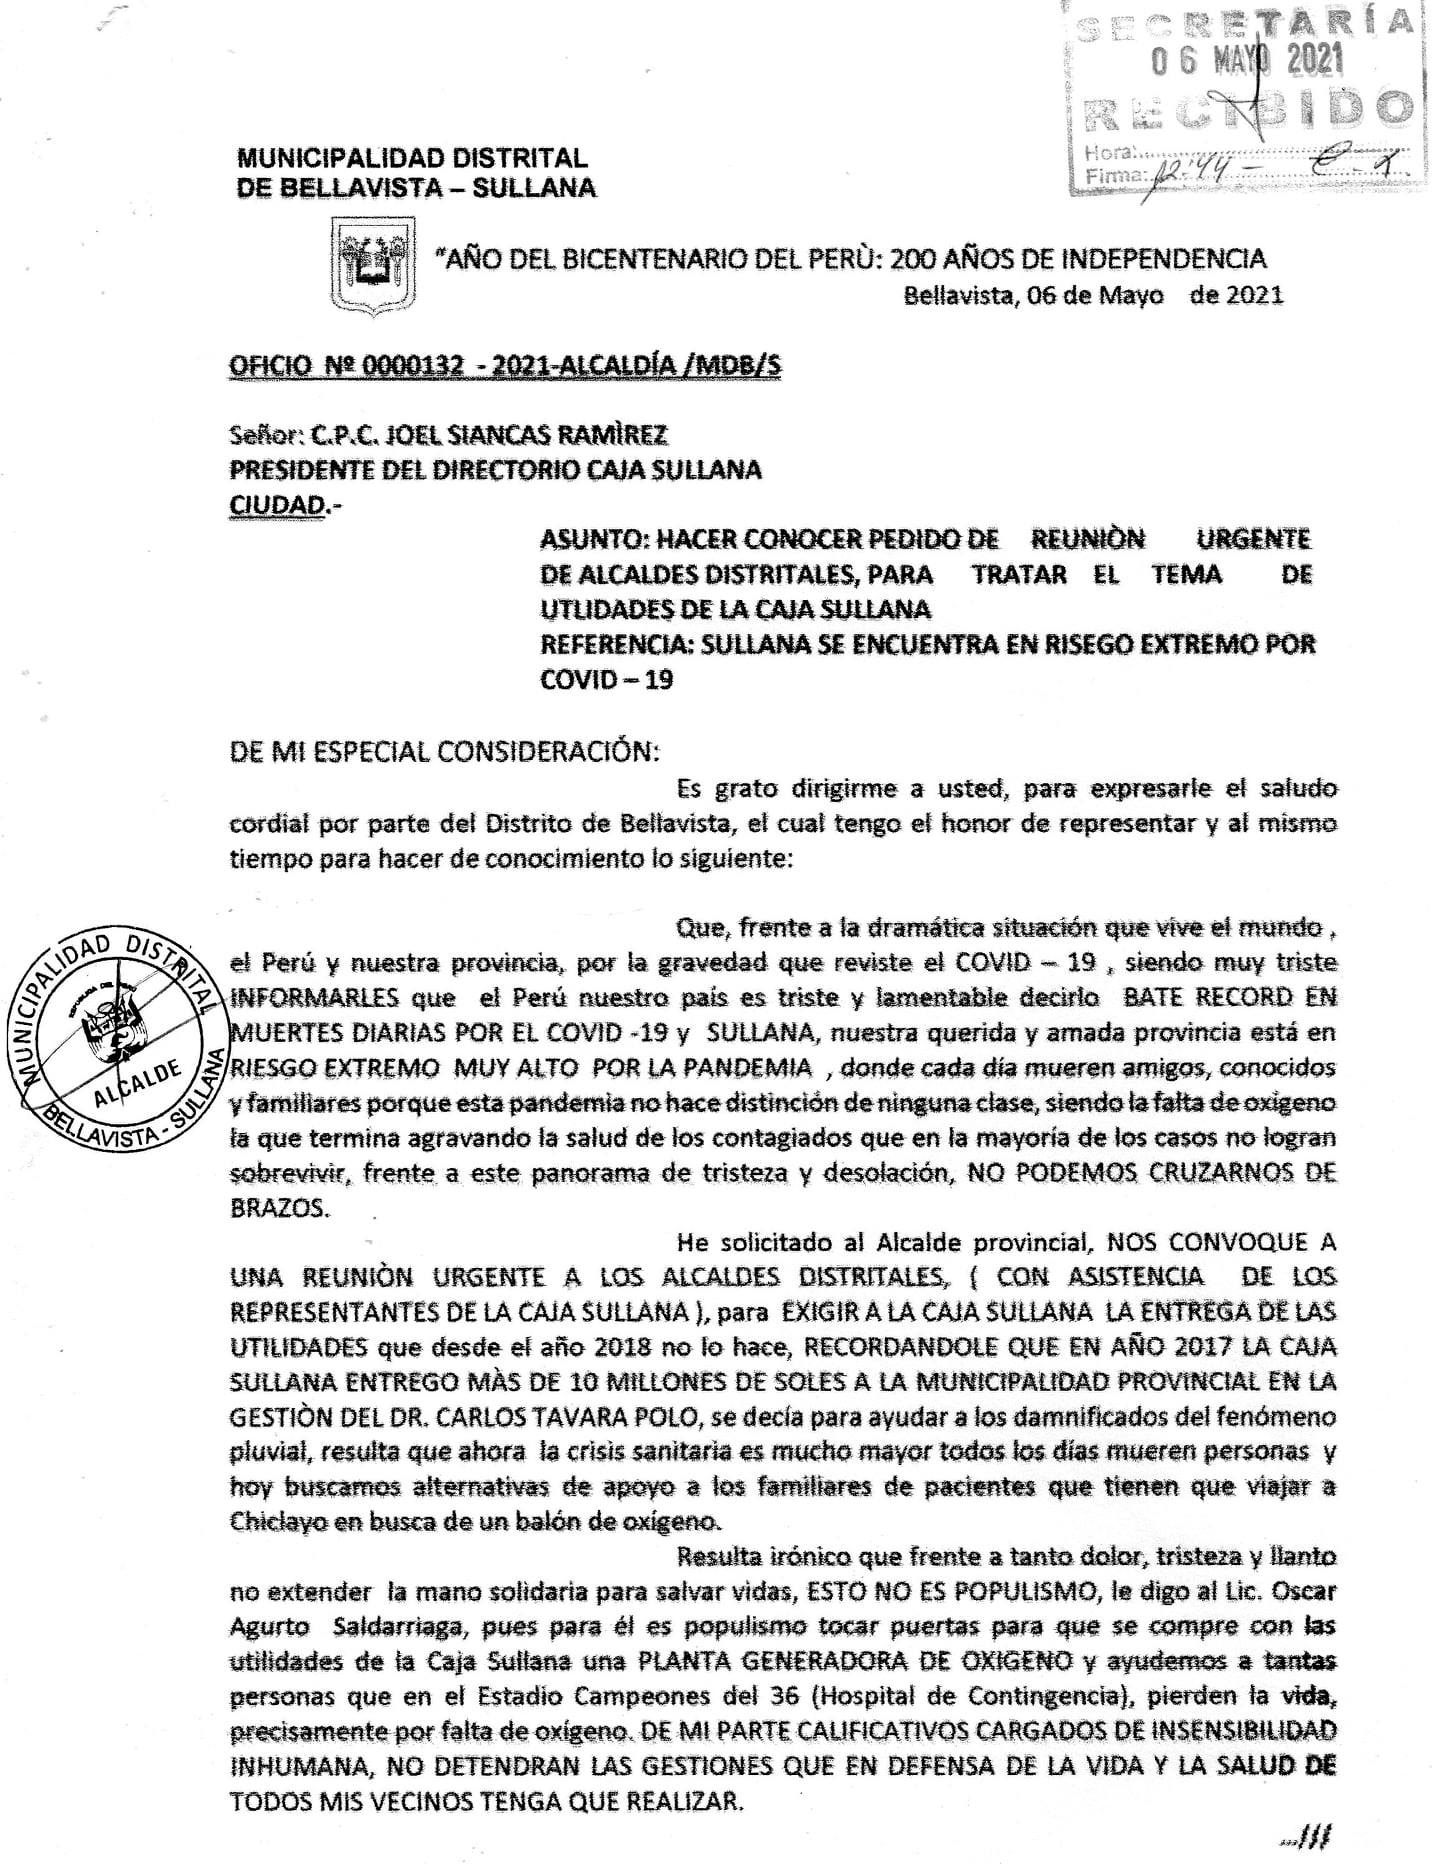 documento presentado a alcalde sullana